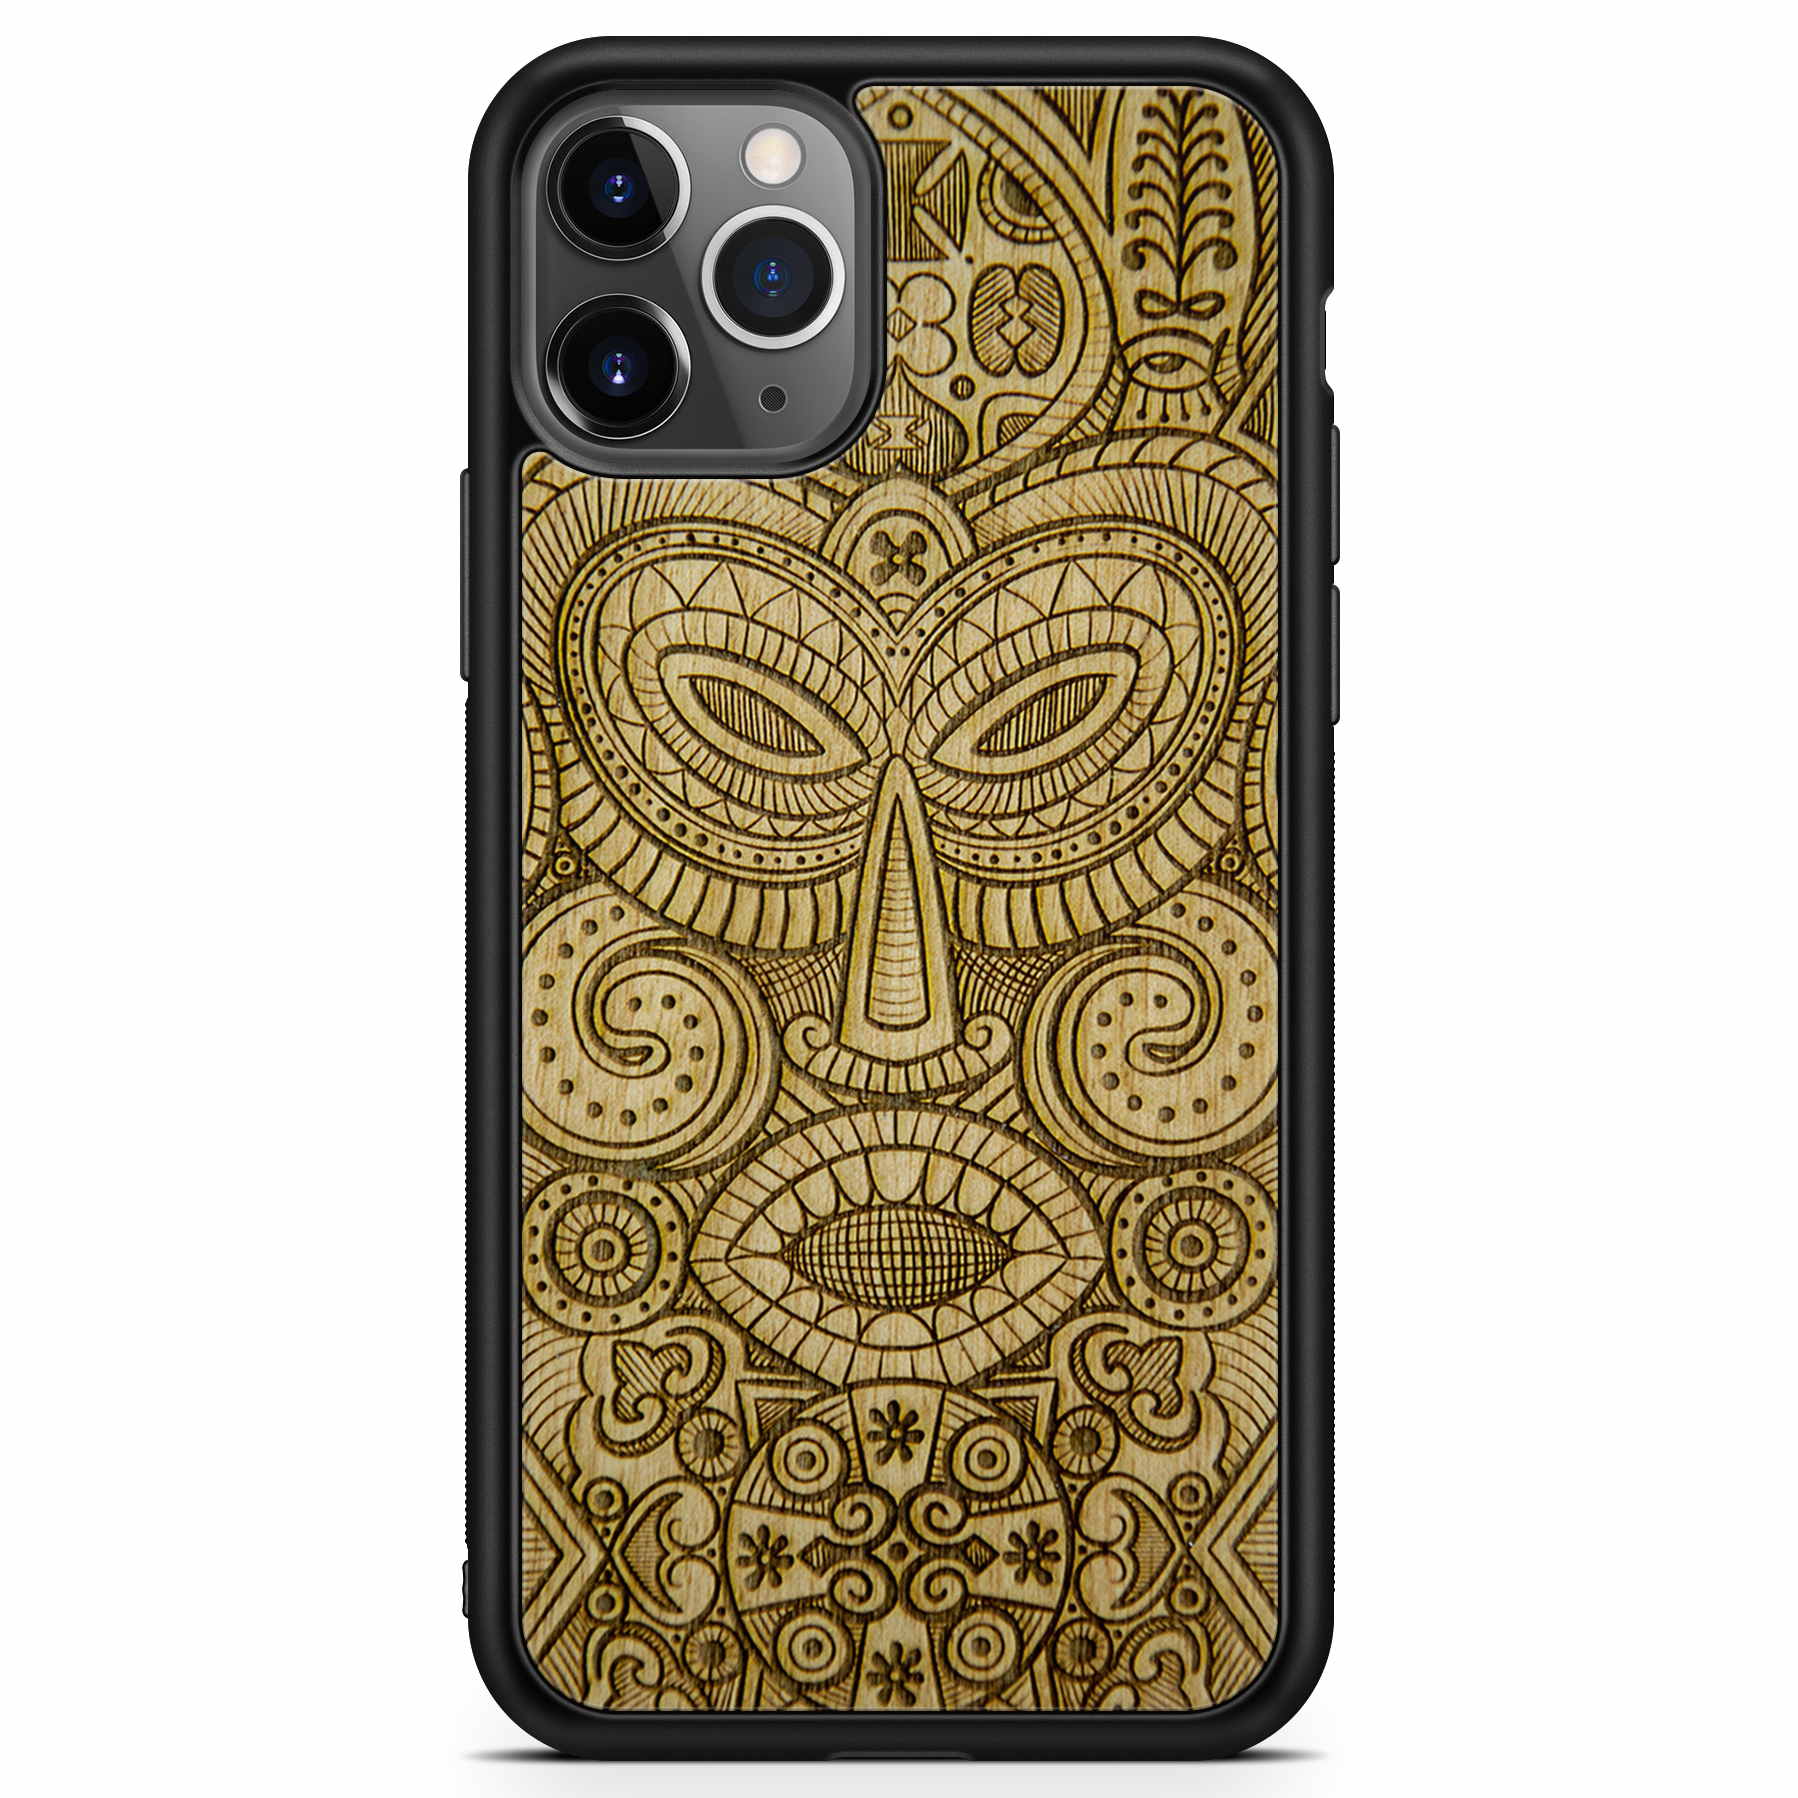 Деревянный чехол для телефона с маской Tribal Mask для iPhone 11 Pro Max